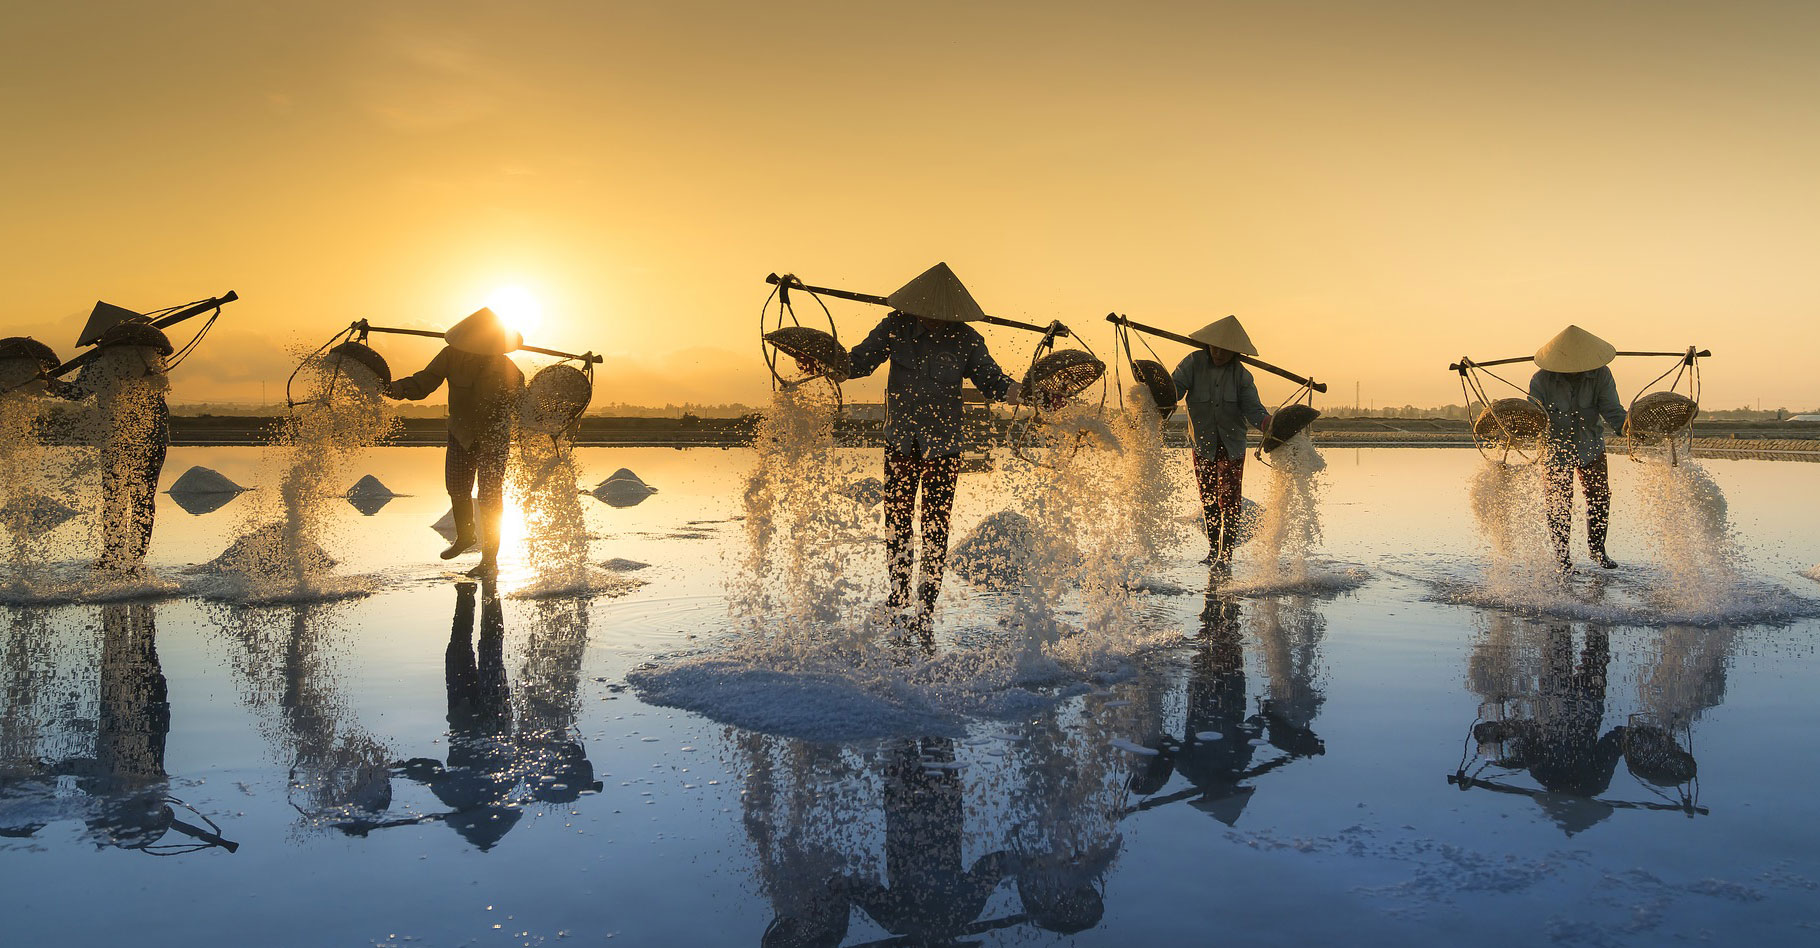 Au Vietnam, on produit du sel sur les côtes du pays, du nord au sud selon des techniques différentes. La période de la récolte du sel s’étale traditionnellement sur les mois les plus chauds de l’année, de janvier à juin. Le travail des ouvriers dans les marais salants est éprouvant. Et le cours du sel étant variable, la vie de ces saliniers est des plus instables. D’autant que la saliculture semble aujourd’hui de plus en plus menacée par le réchauffement climatique qui, apportant des pluies de plus en plus violentes, compromet régulièrement la production. © Quangpraha, Pixabay